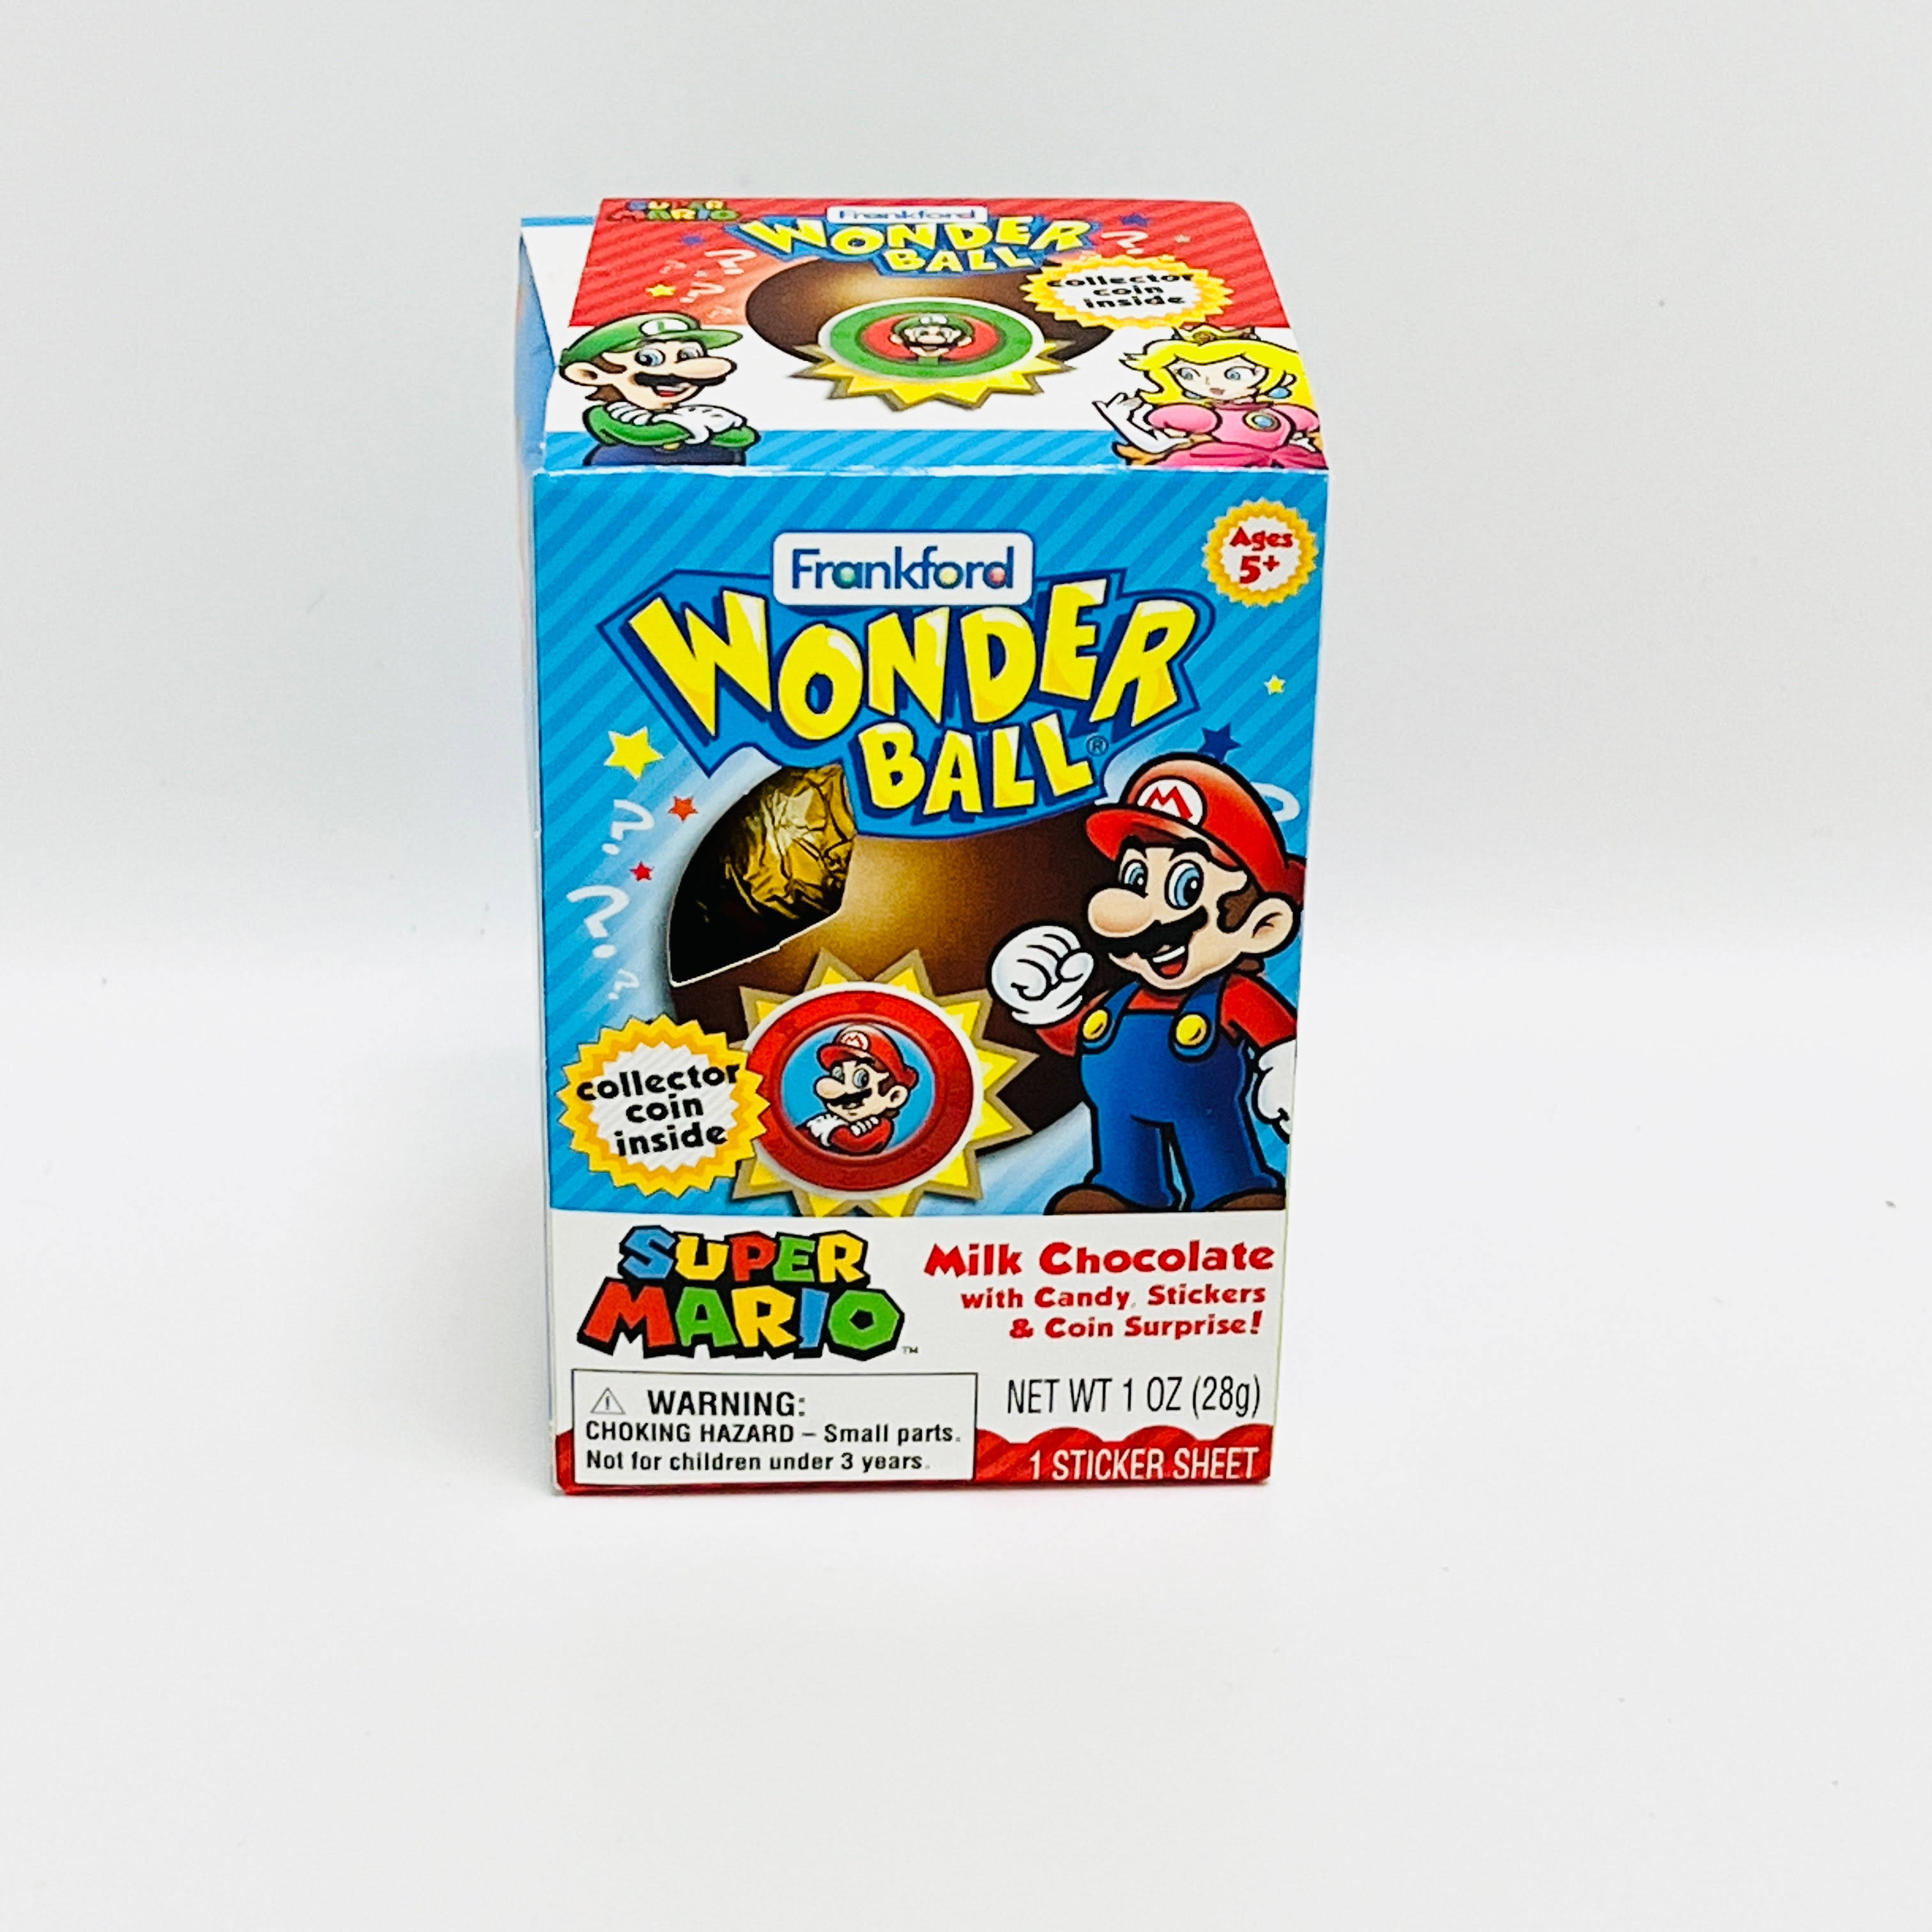 Frankford Super Mario Wonder Ball Candy - 1oz